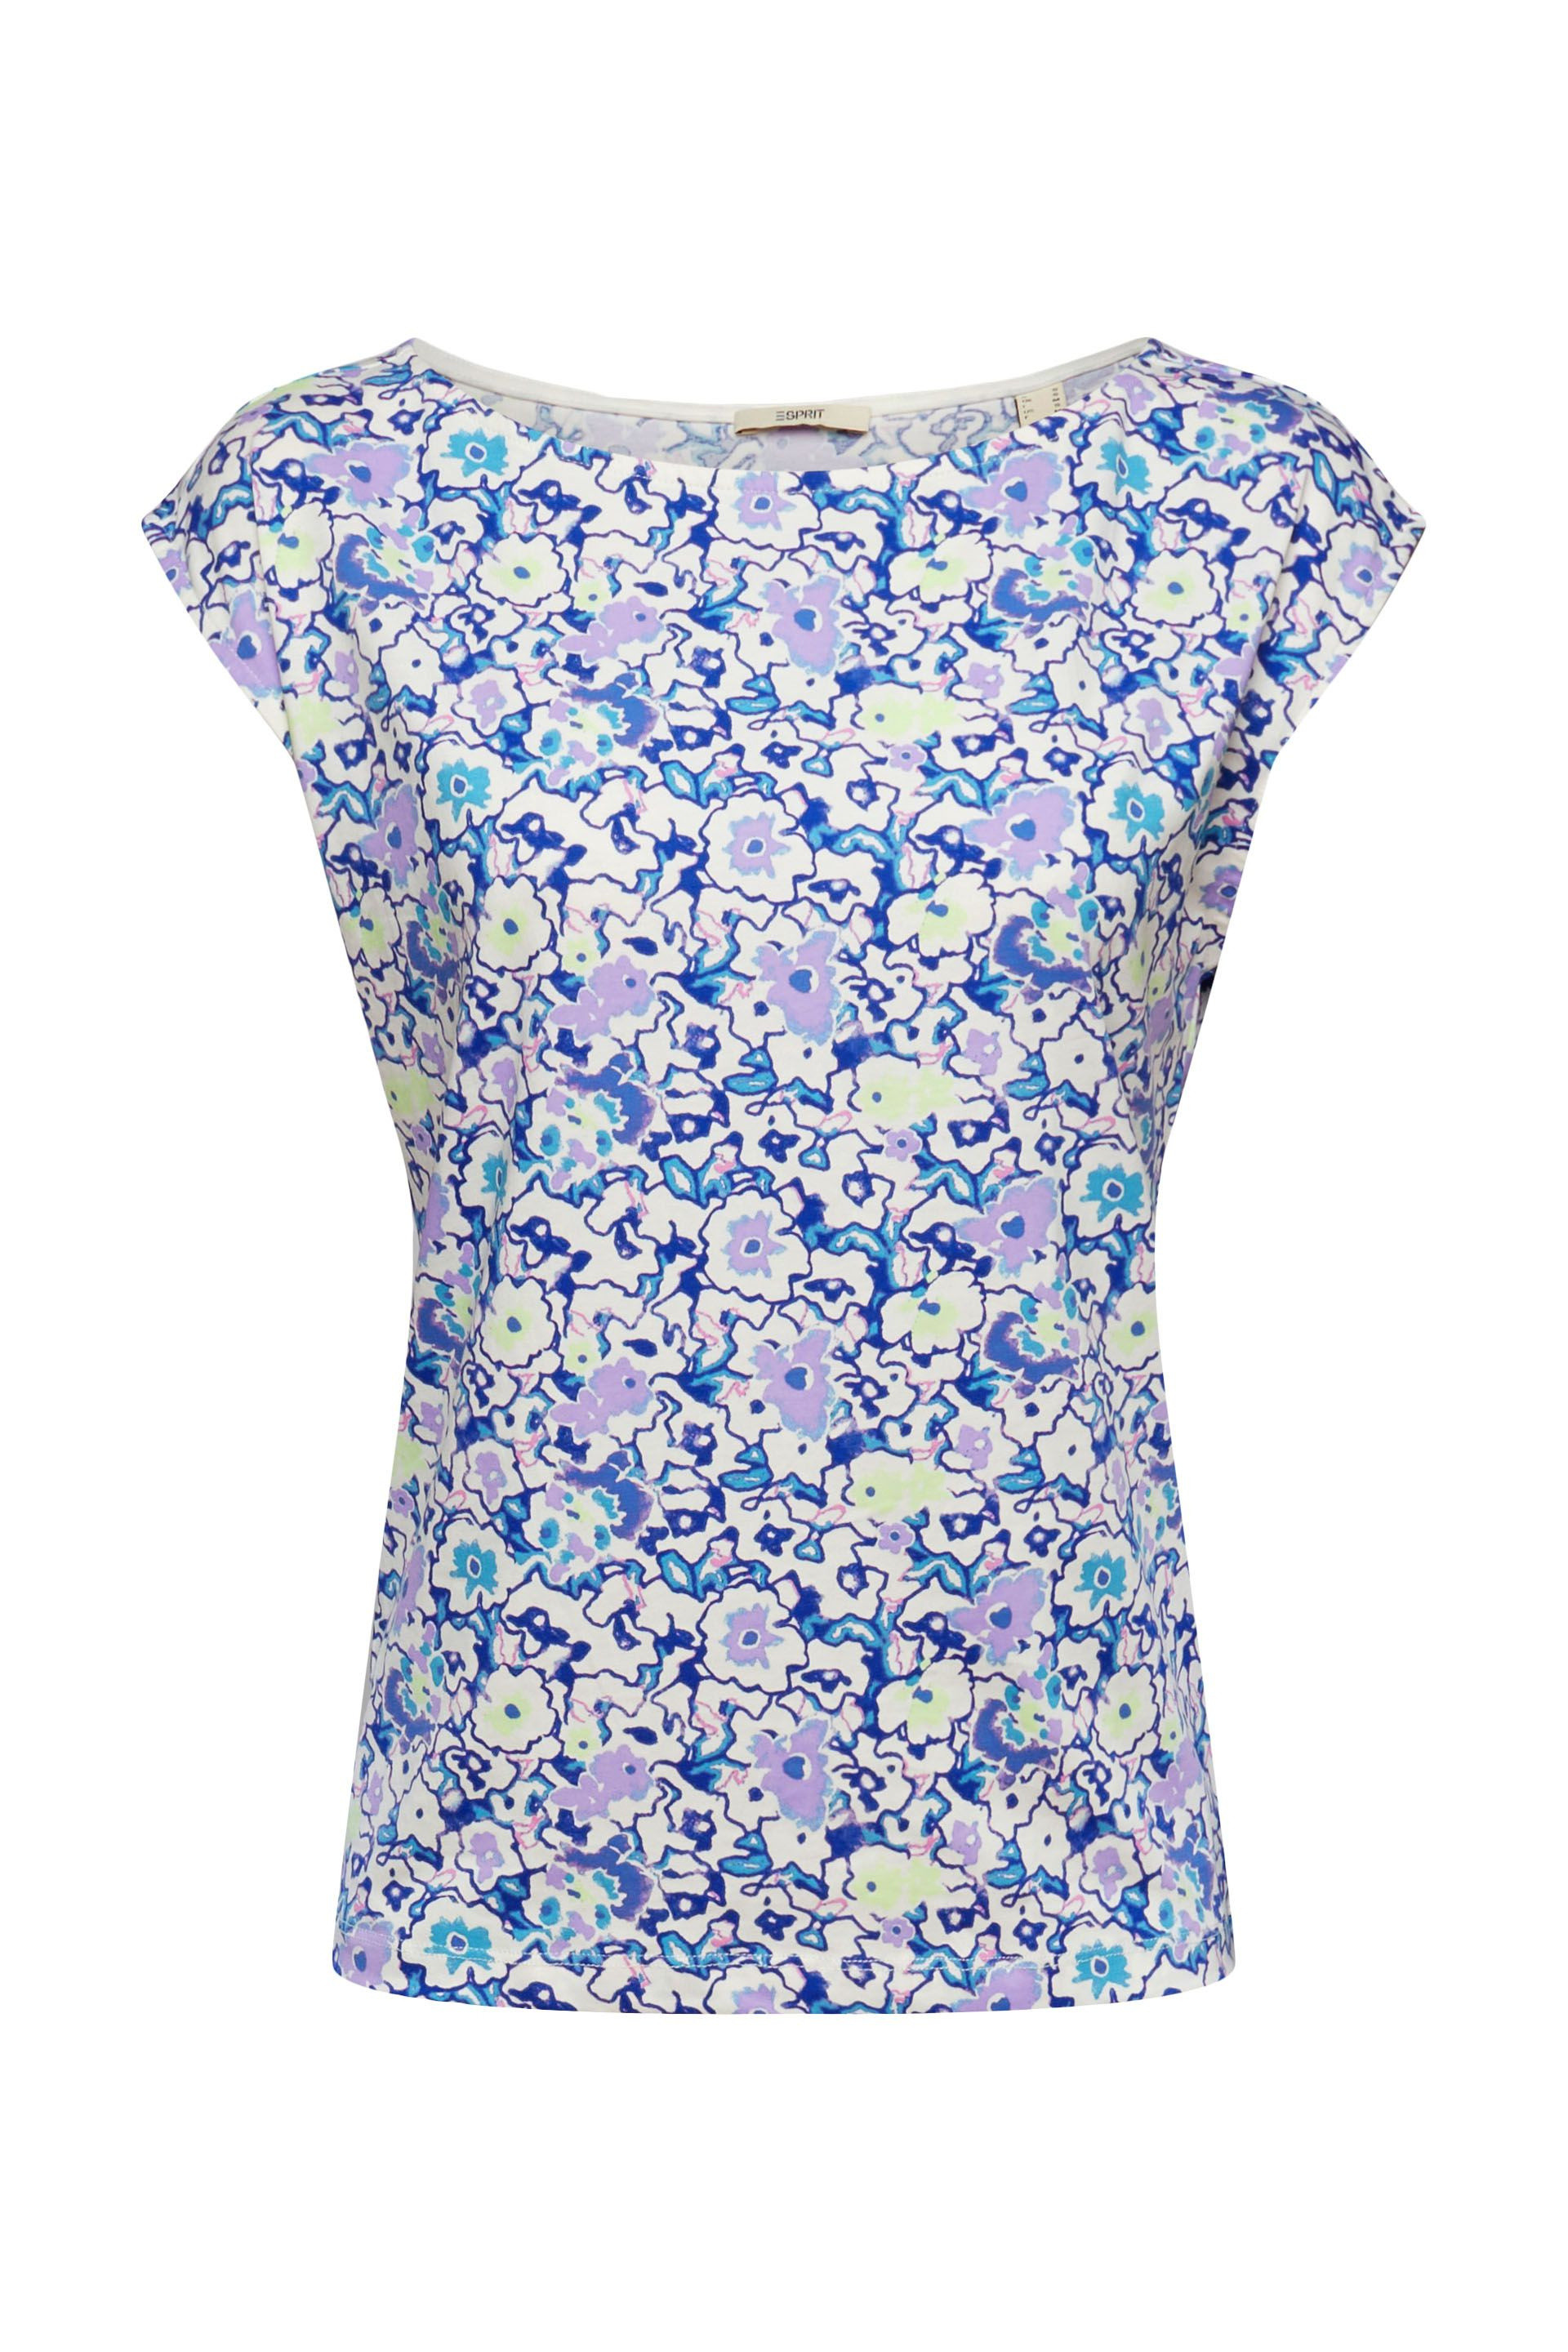 Esprit - Floral print T-shirt, Blue, large image number 0